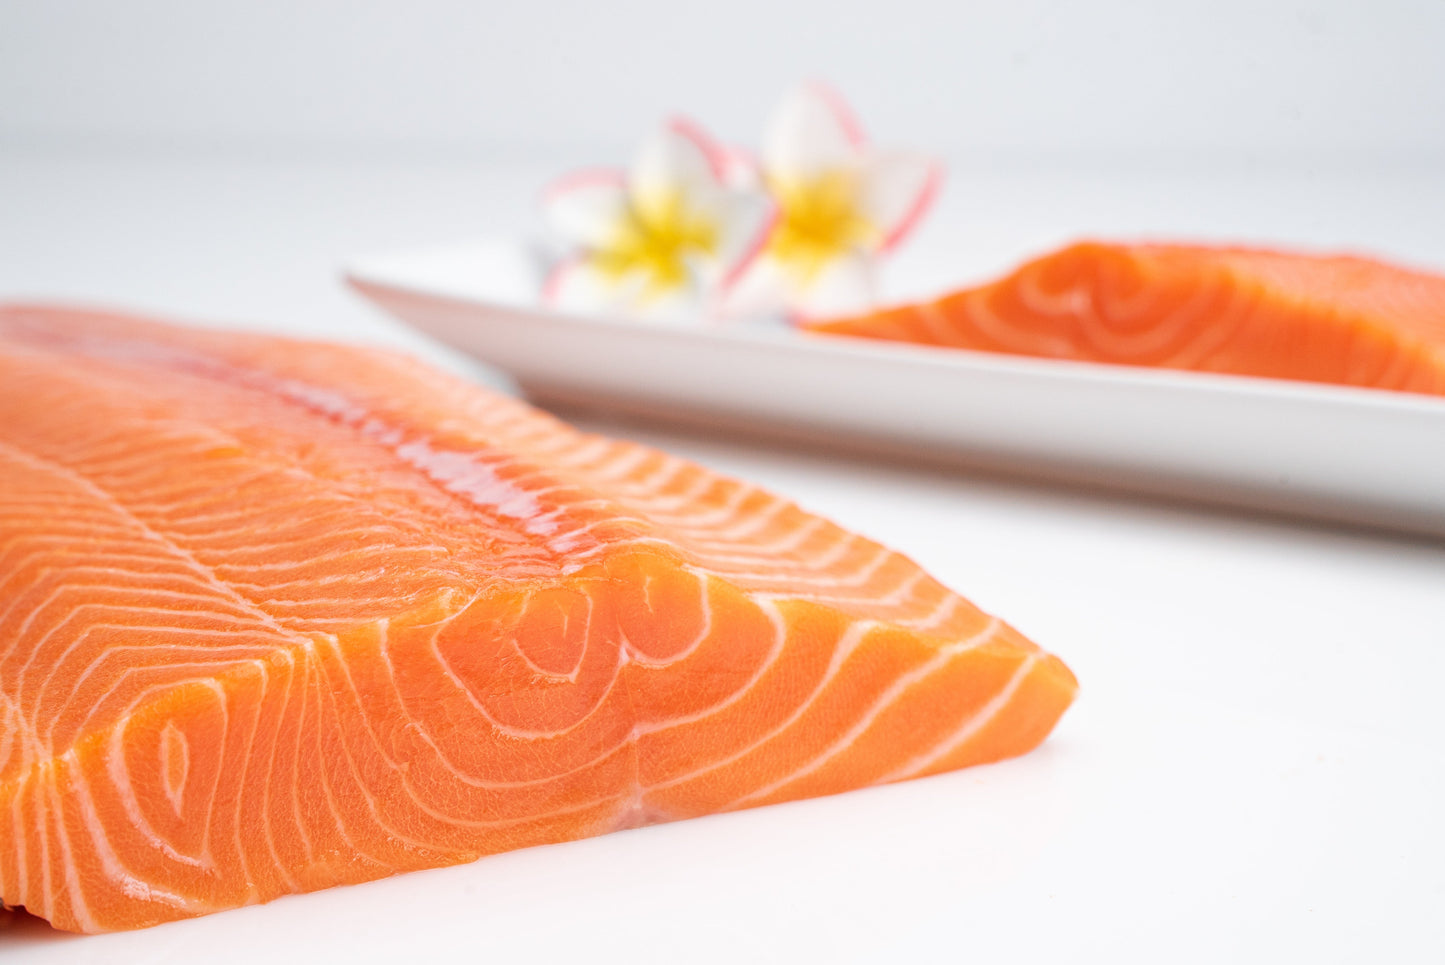 Ultra Ahi, King Salmon, Kauai Sweet Prawns 4.5 lbs